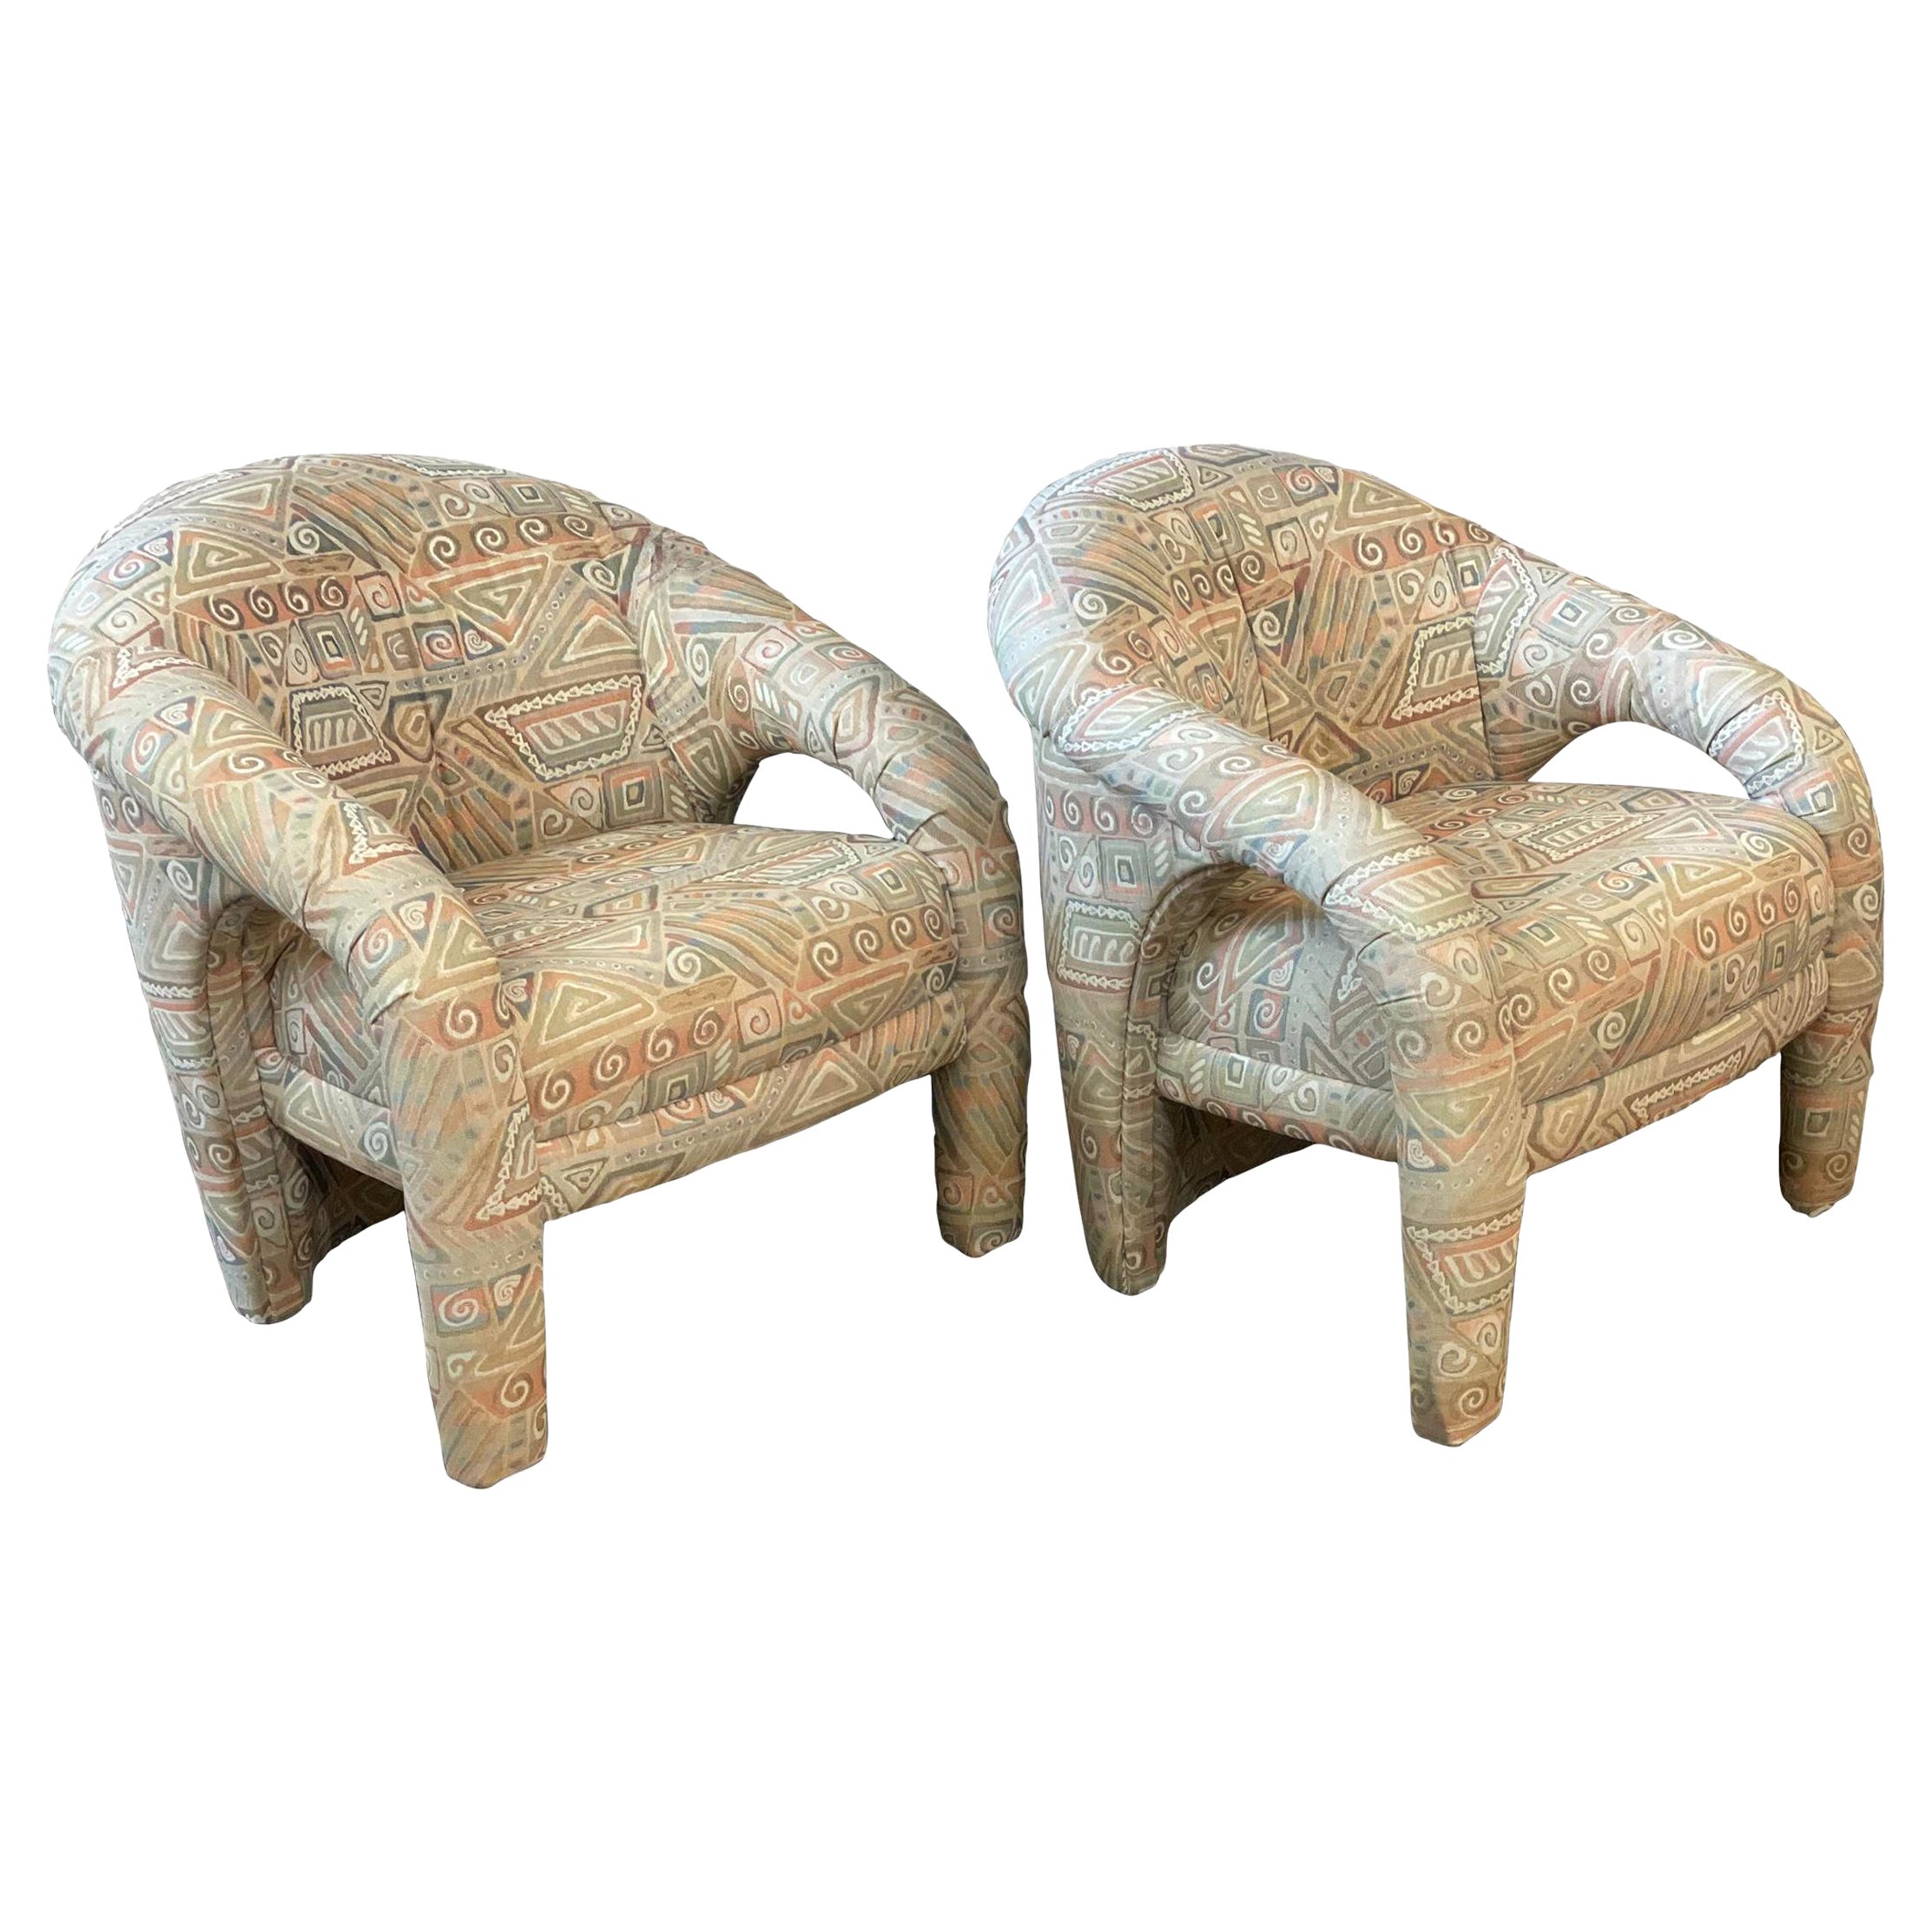 1980s Postmodern Arc Chairs, a Pair